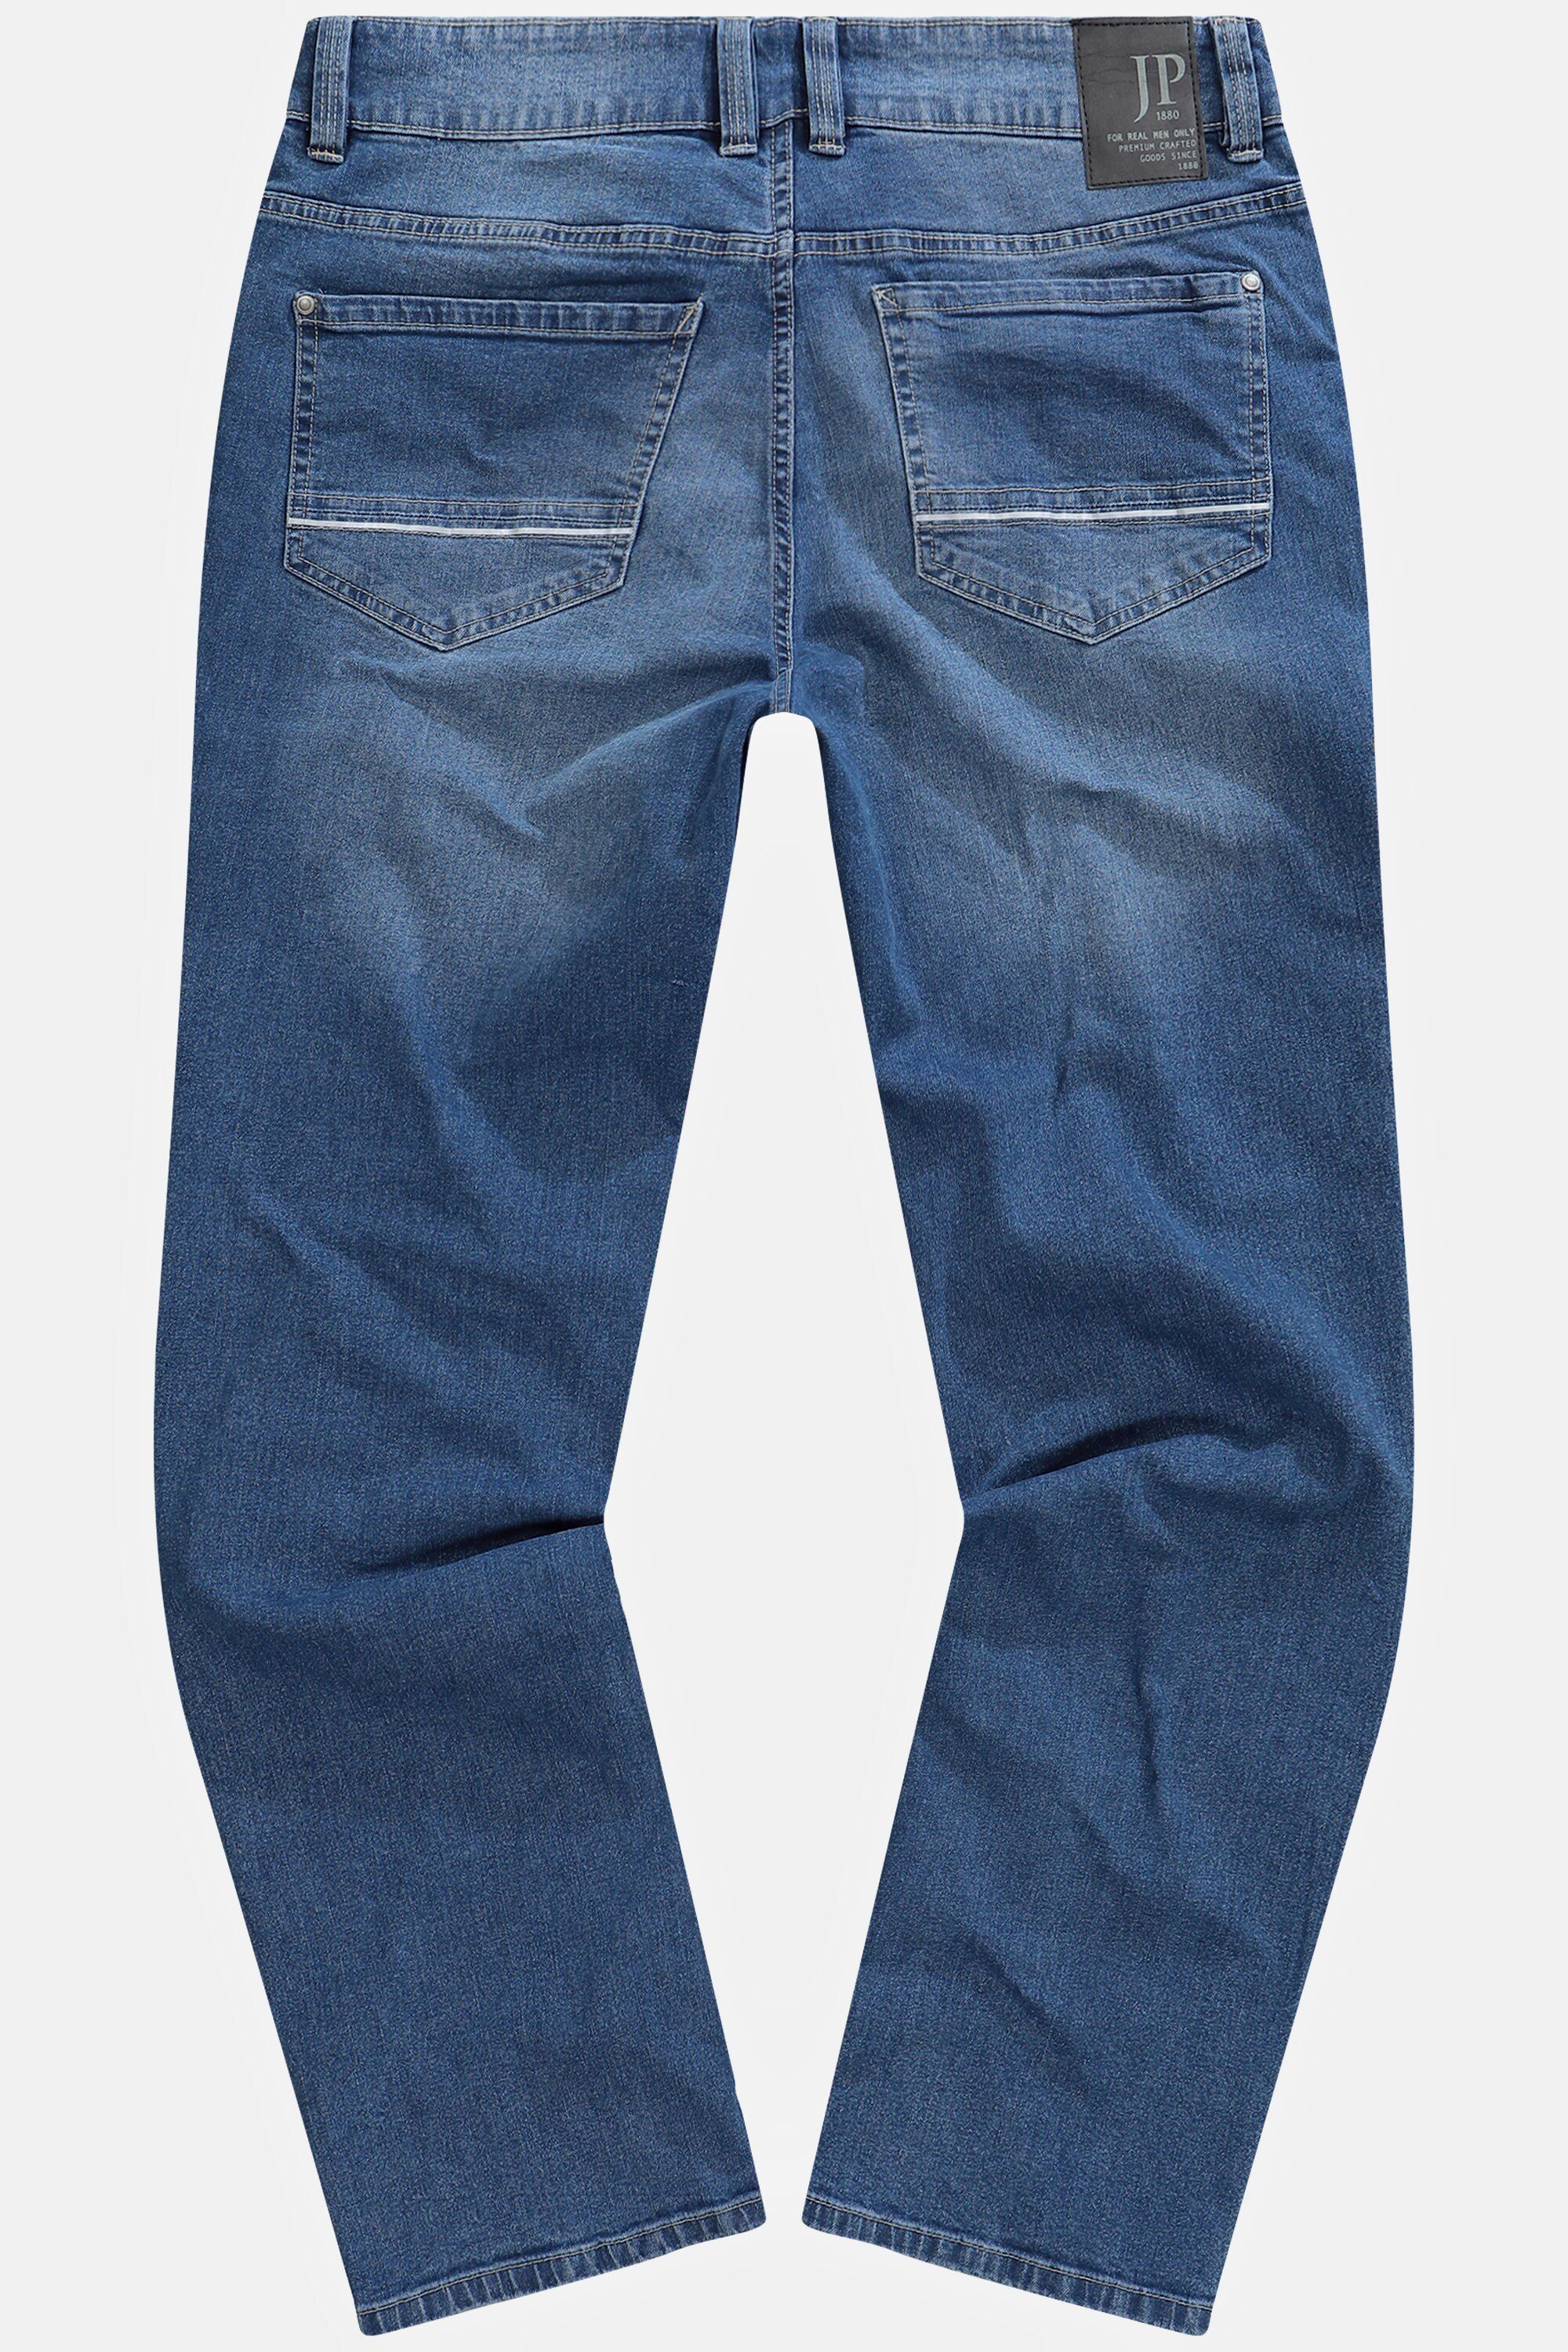 Reflektor-Saum Safety-Pocket Jeans 5-Pocket-Jeans JP1880 Denim